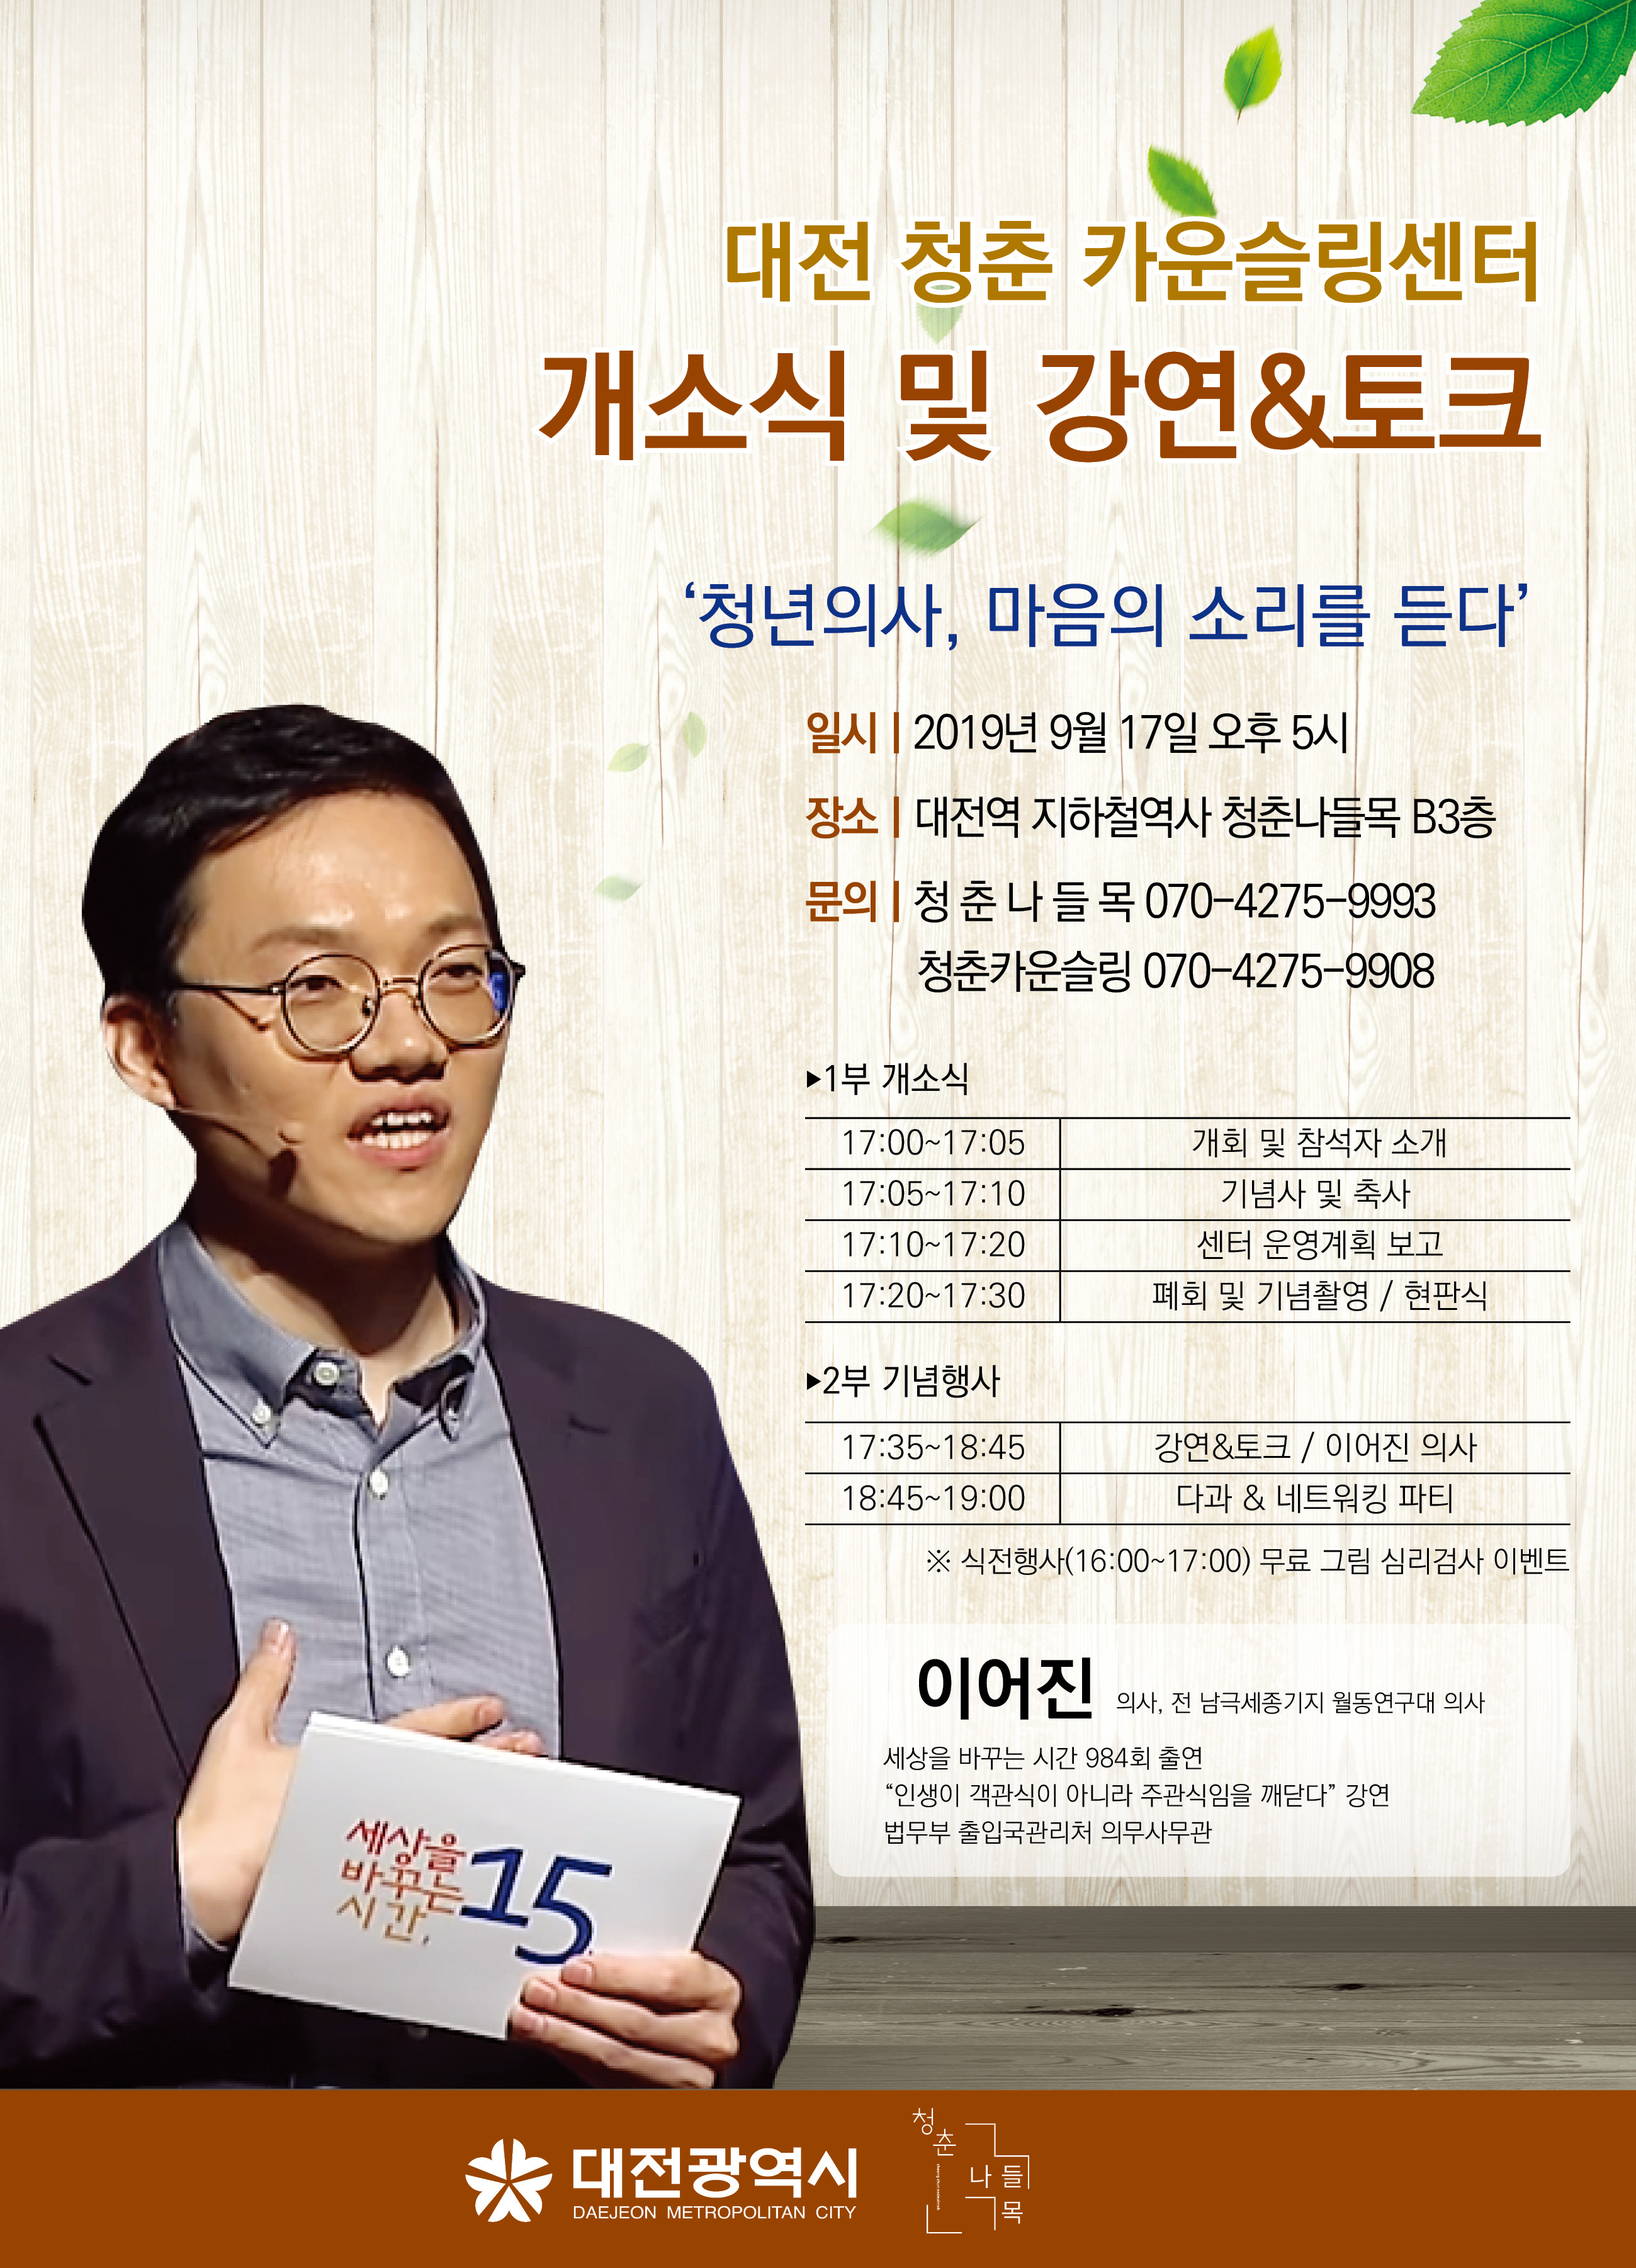 대전 청춘 카운슬링센터 개소식 및 강연&토크쇼에  초대합니다!!